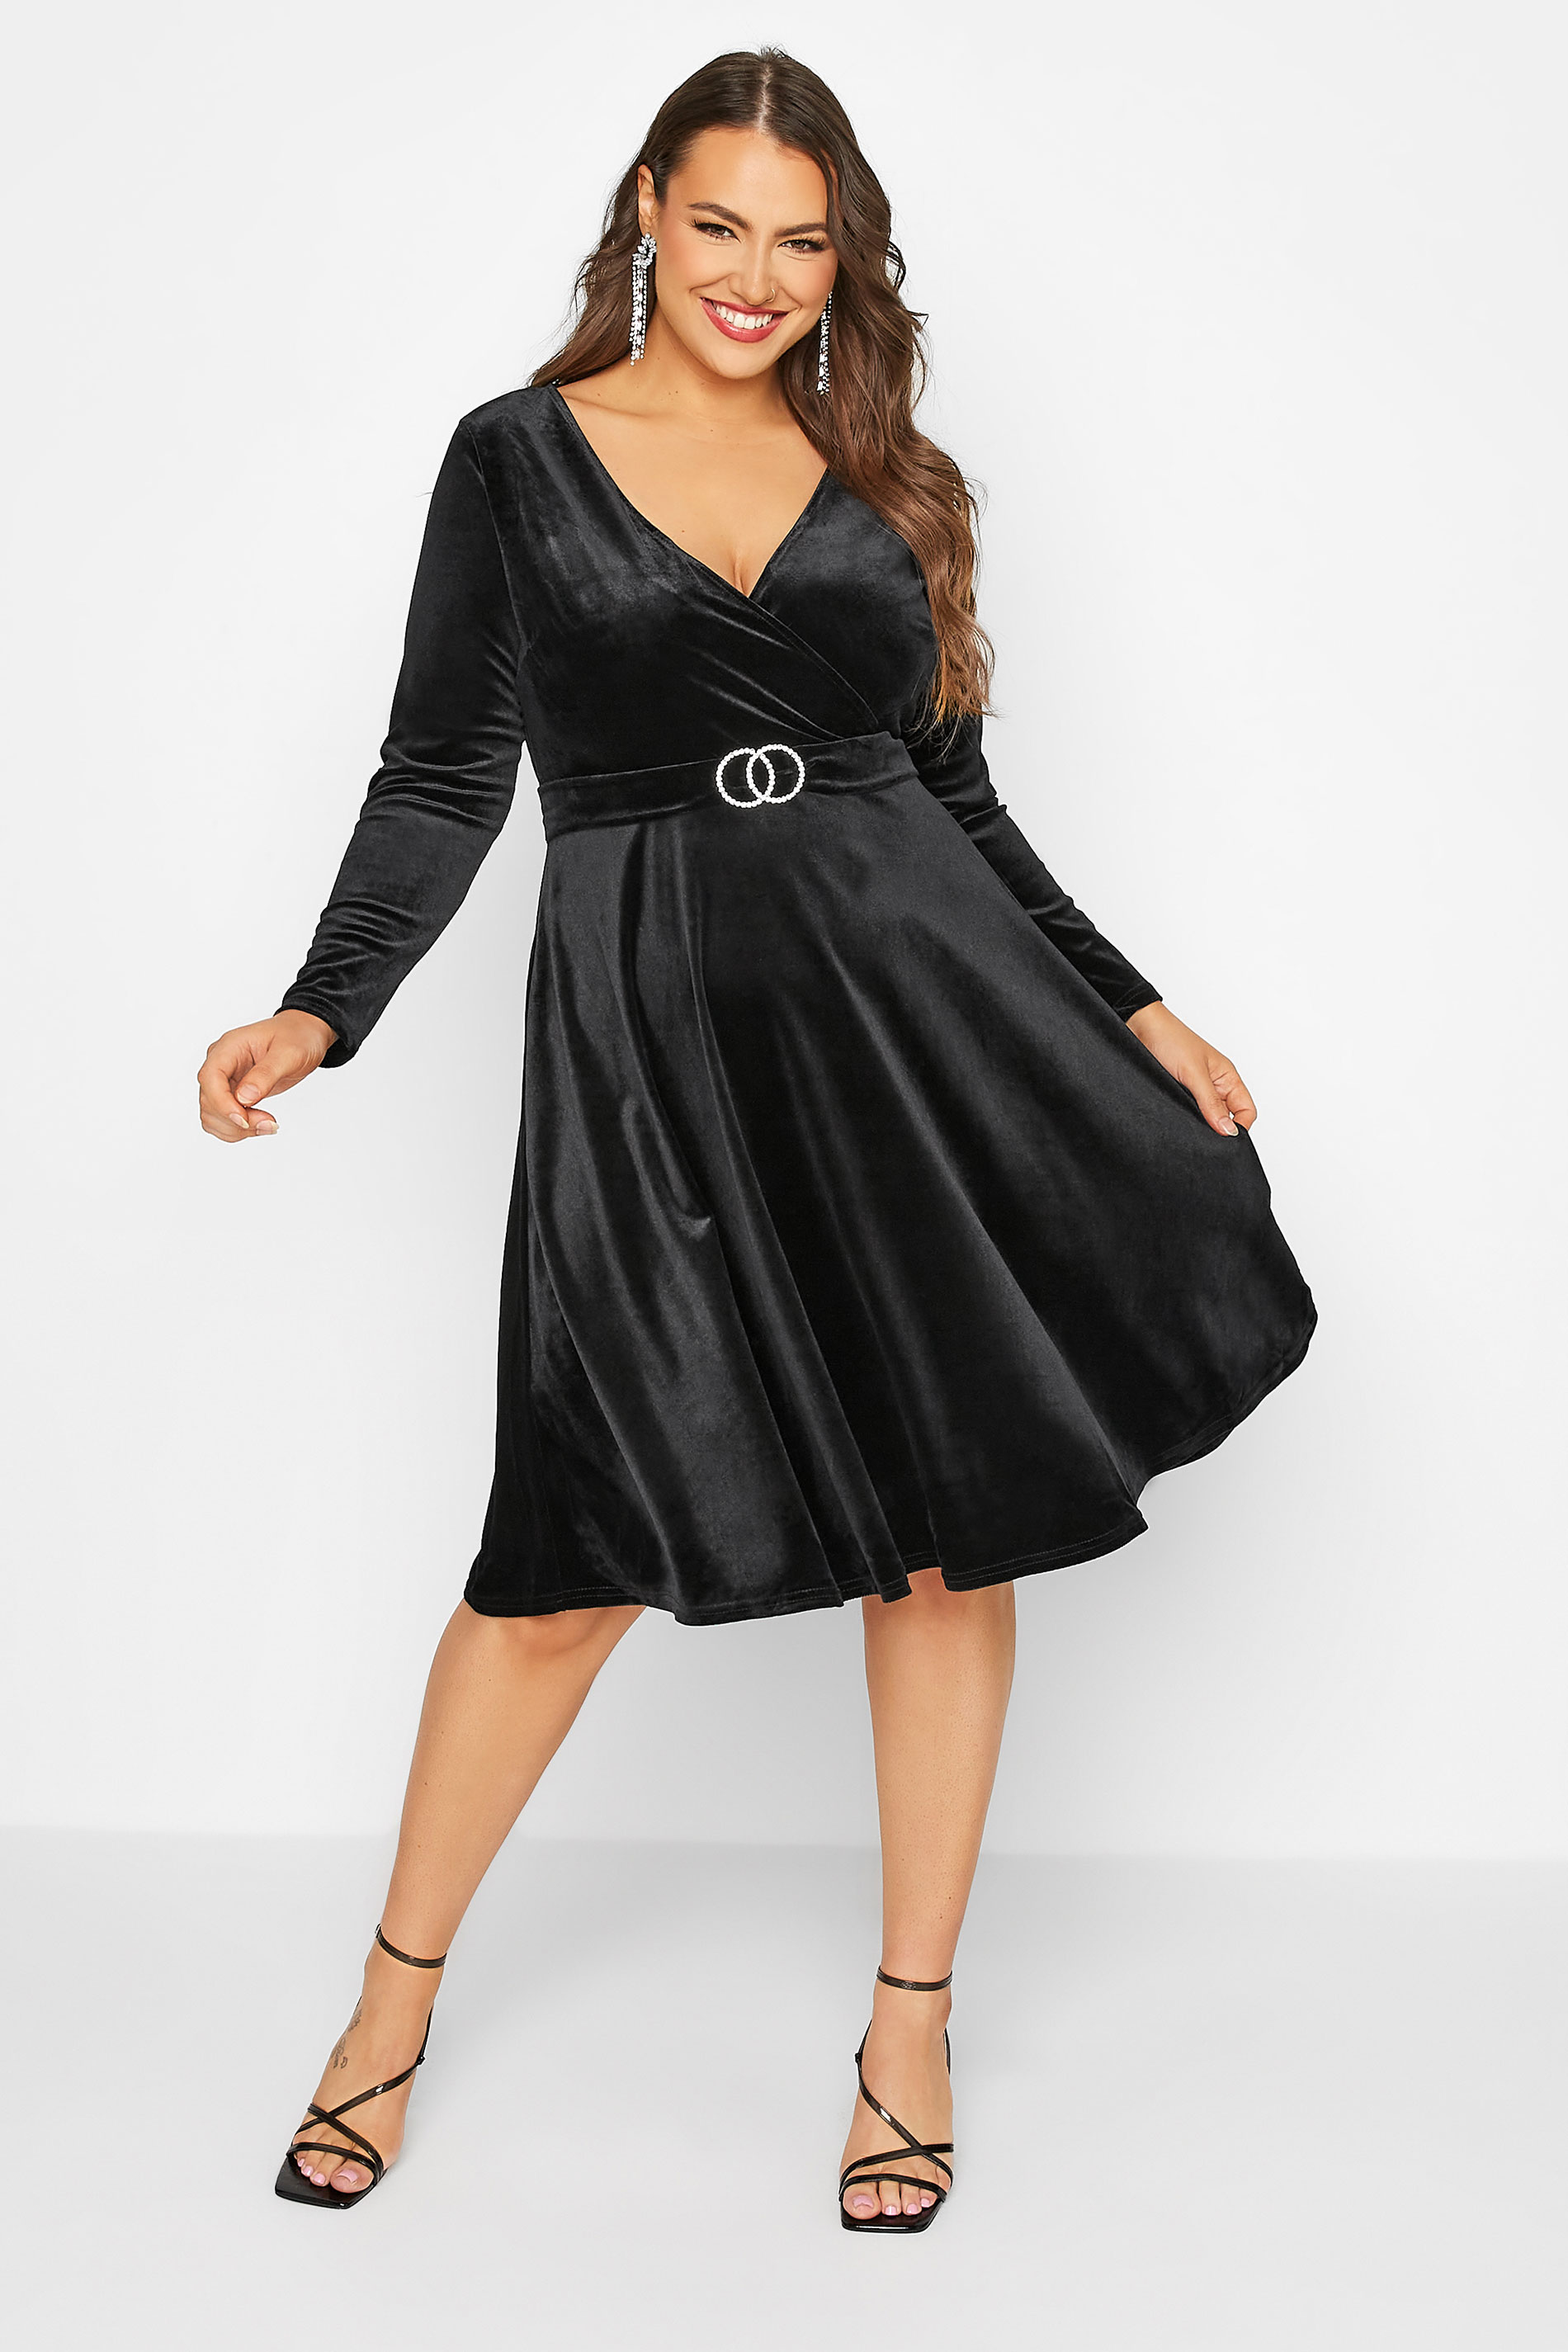 YOURS LONDON Curve Black Diamante Buckle Velvet Wrap Dress | Yours Clothing 1